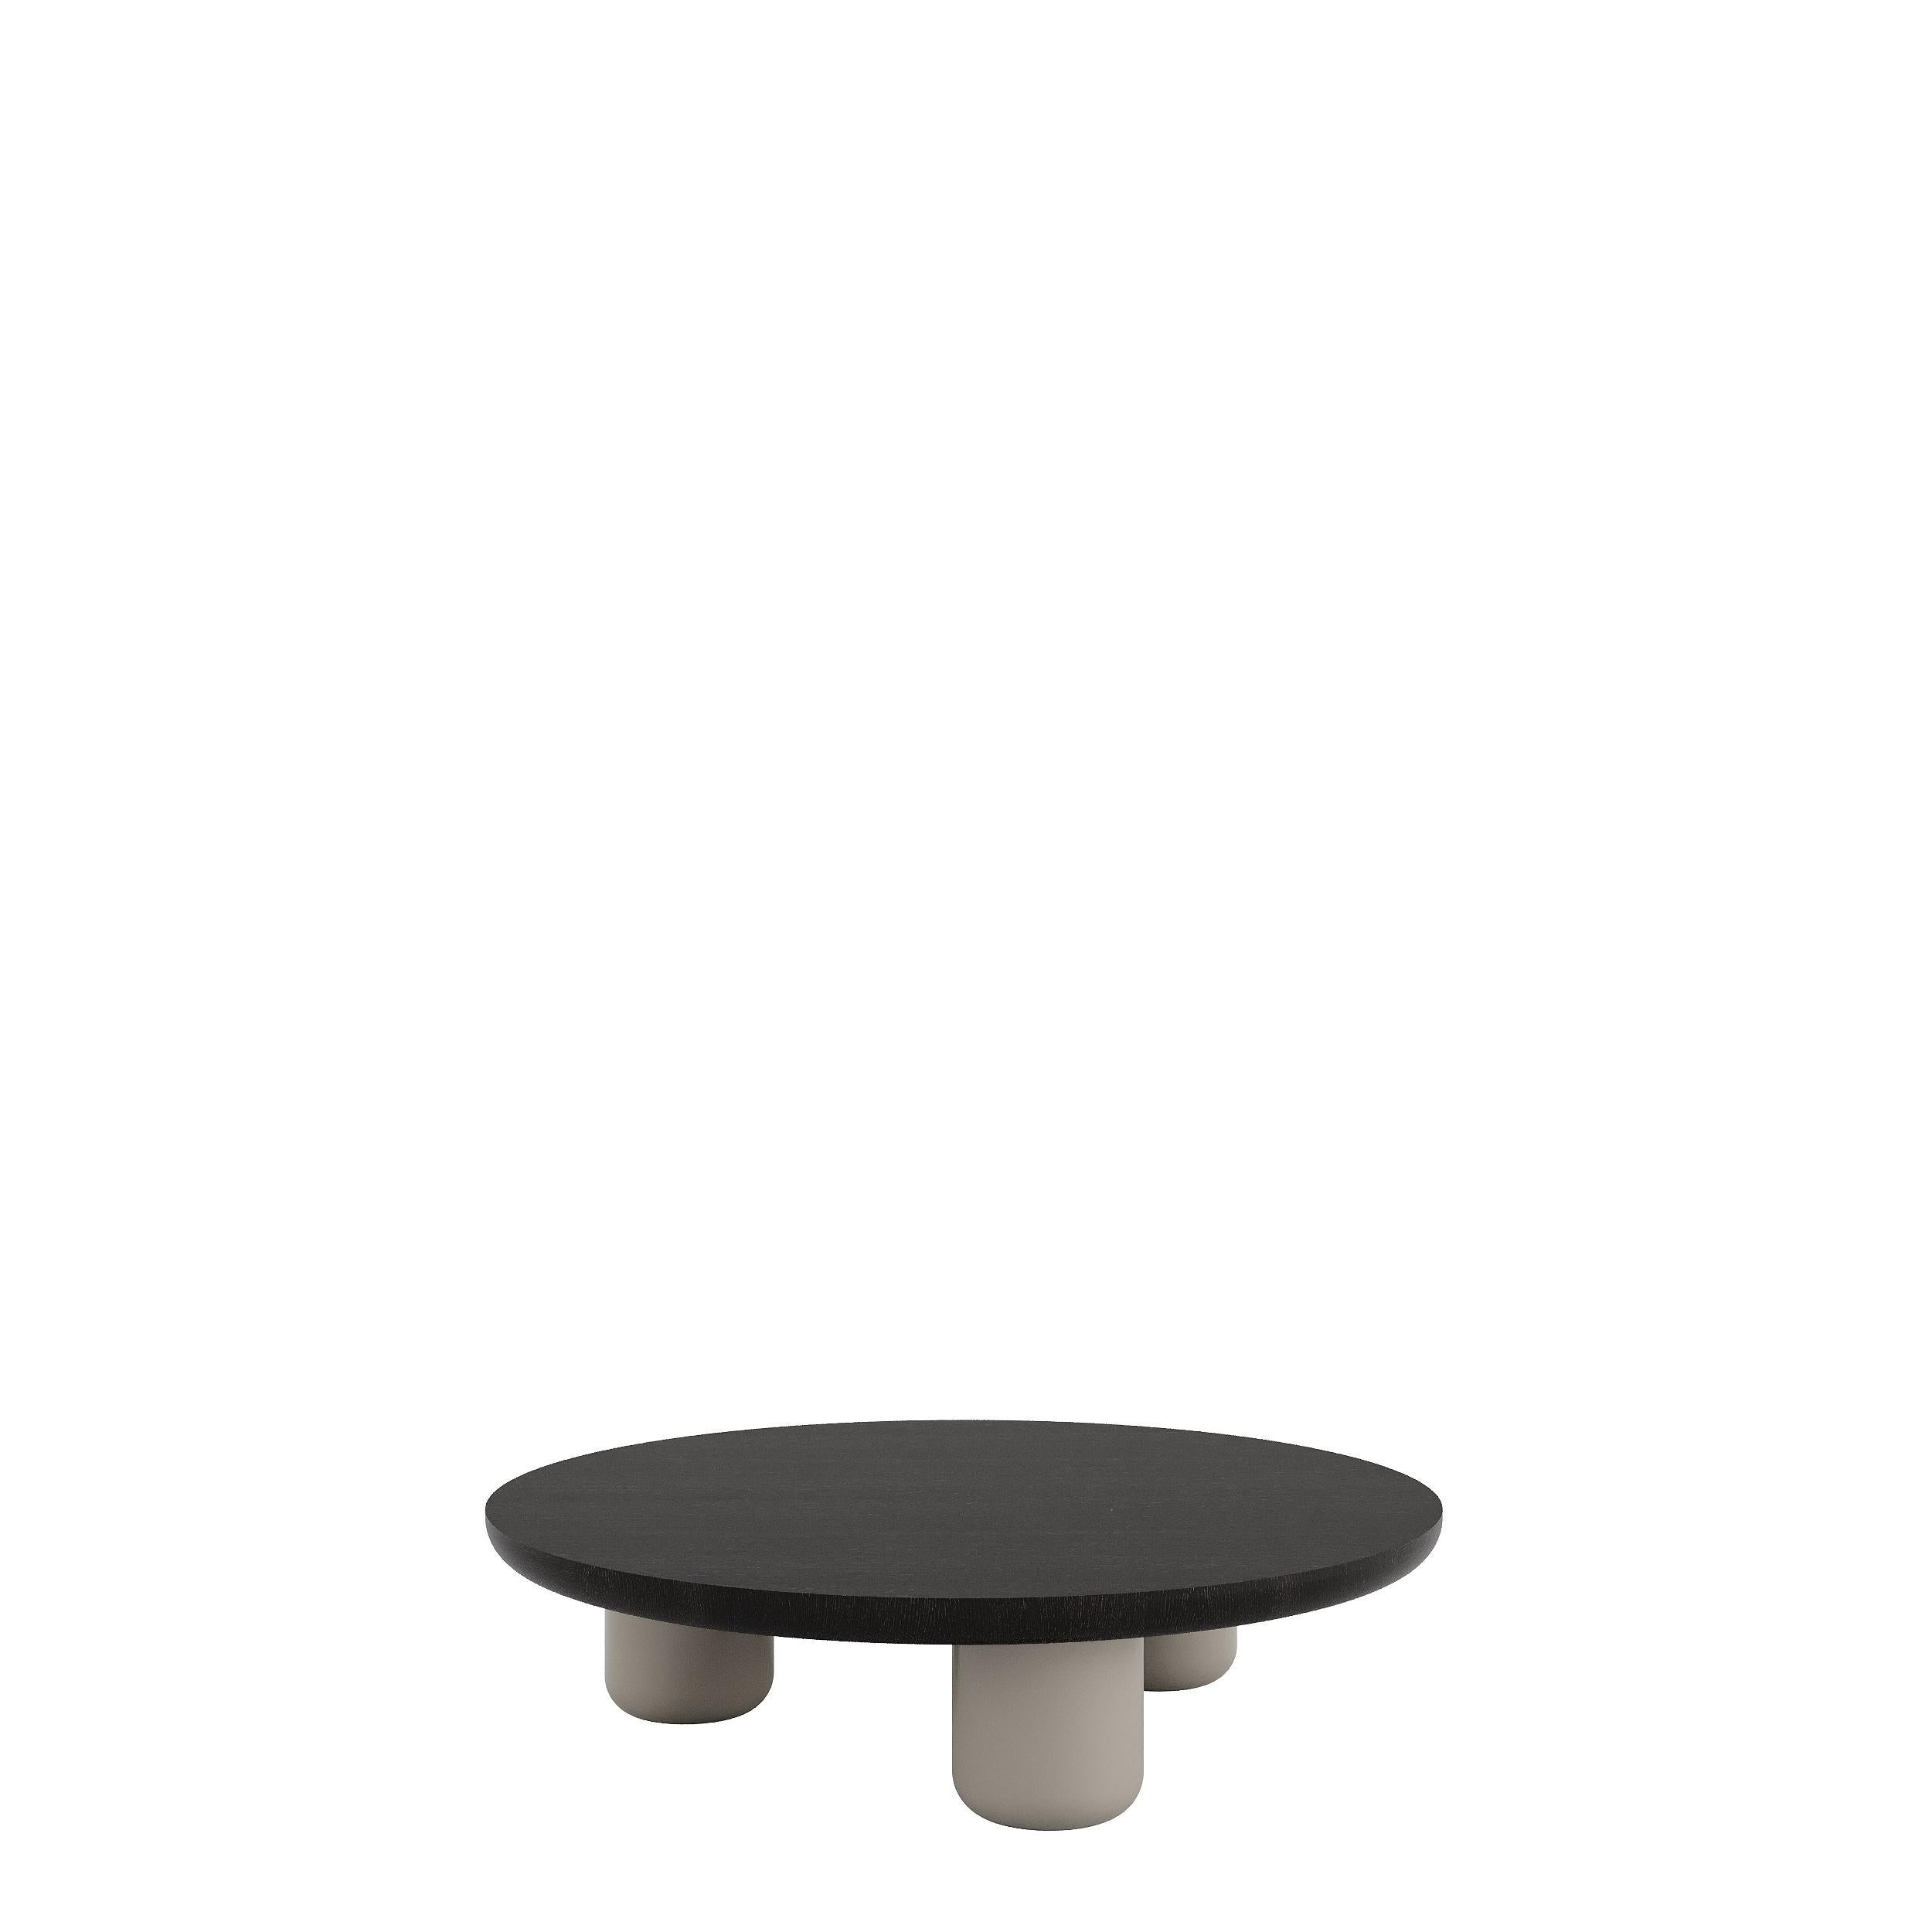 BEL-AIR ist ein Couchtisch mit einem modernen Design. Der zeitgenössische Tisch ist mit einer runden oder quadratischen Platte erhältlich und kann auf Wunsch in Lack oder furniertem Holz ausgeführt werden. Mit drei oder vier Füßen und einem runden